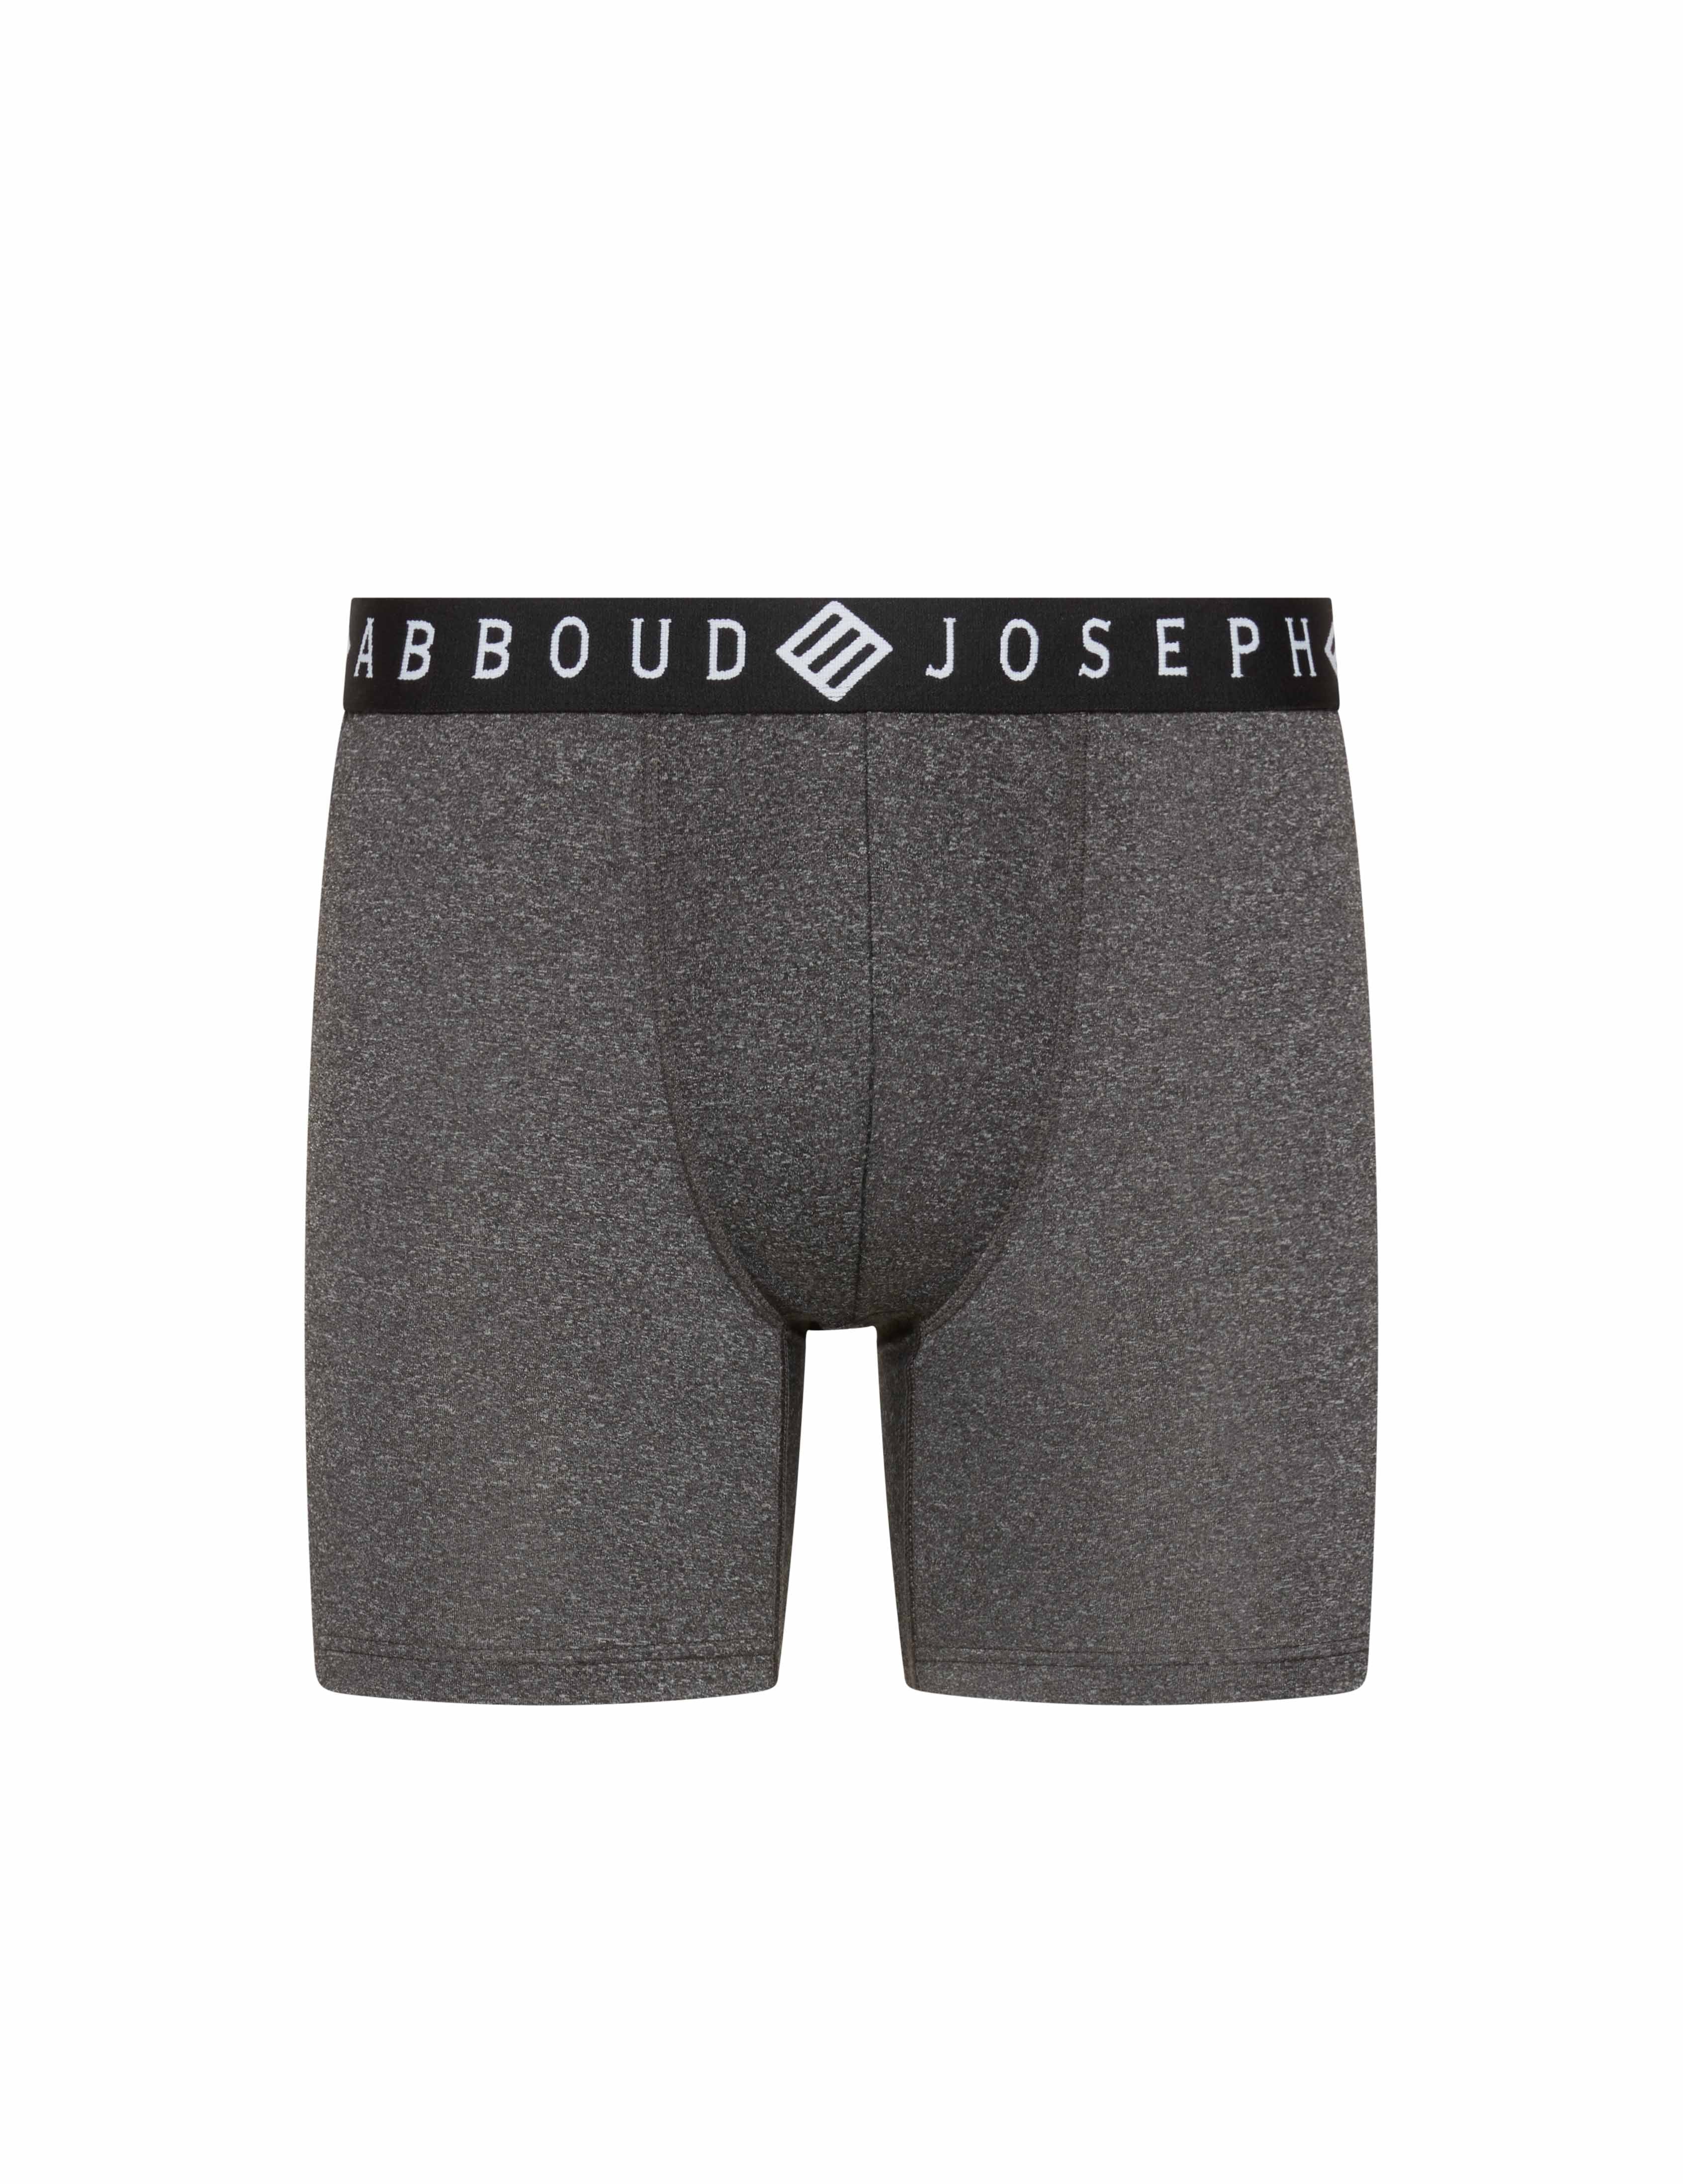 Calvin Klein Men's Dual Tone Boxer Brief – Underwear Store